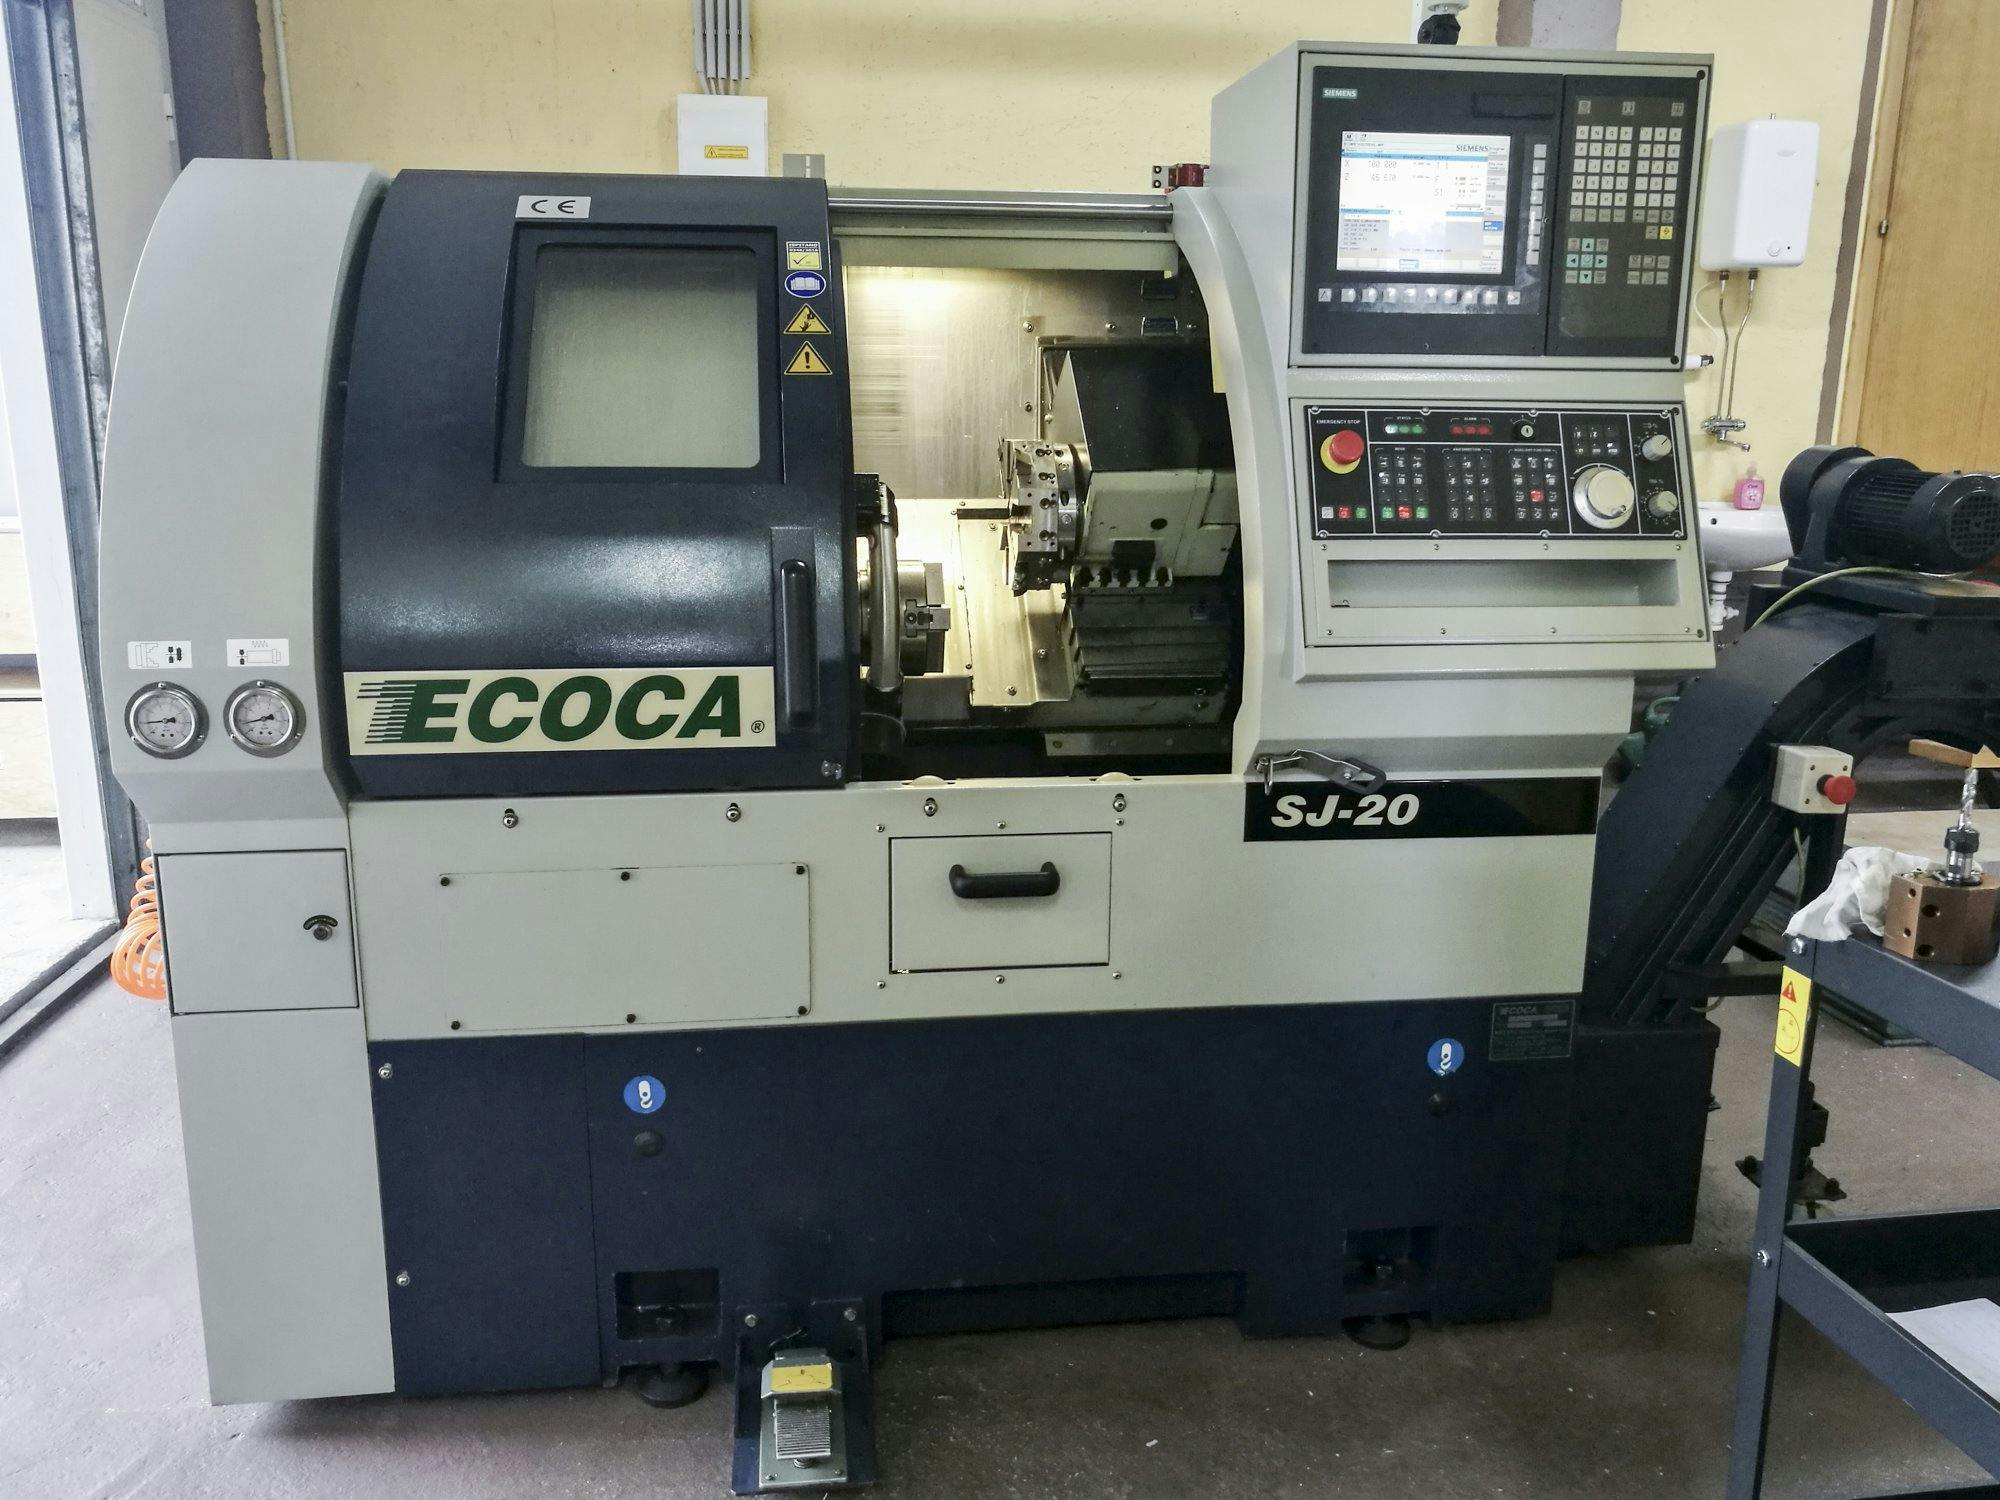 Vista frontal de la máquina ECOCA SJ-20